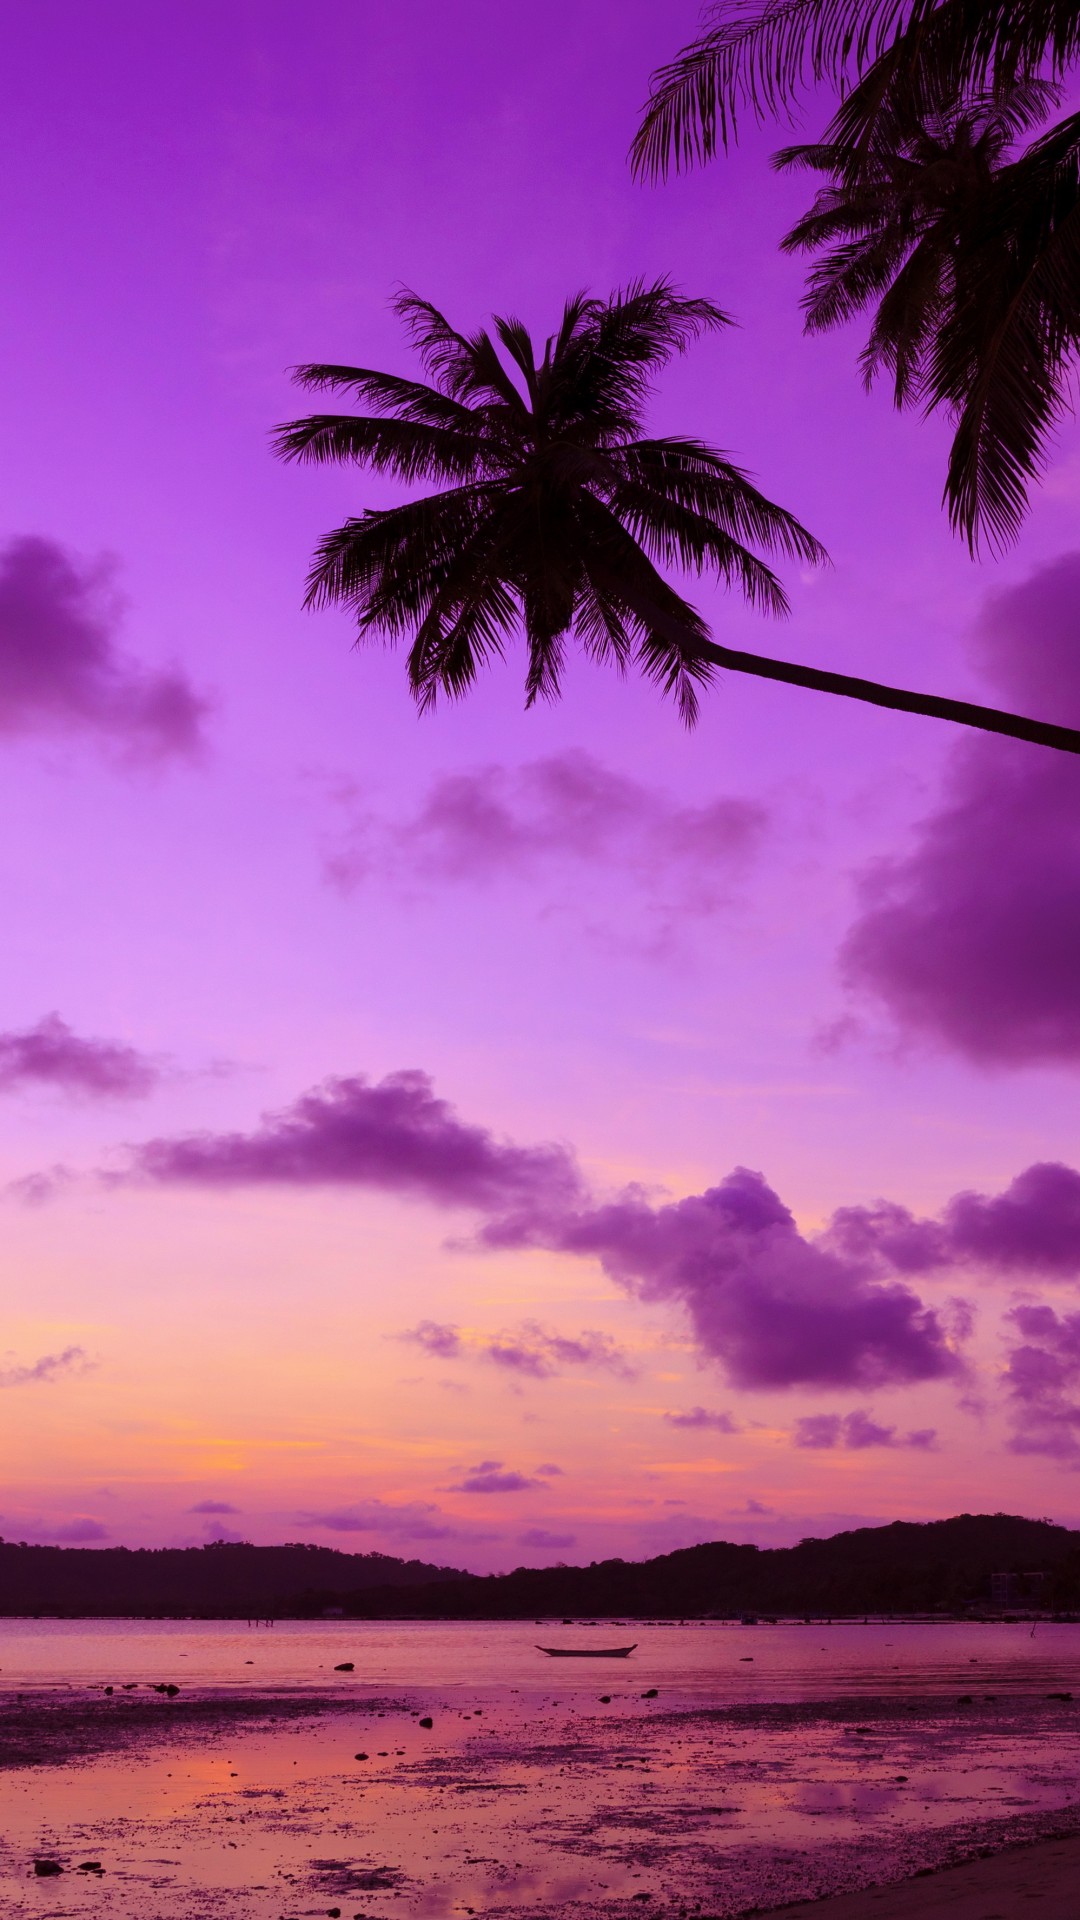 Beach Sunset Wallpaper High Resolution, Amazing Wallpaper - Sunset Colorful Wallpaper Hd , HD Wallpaper & Backgrounds